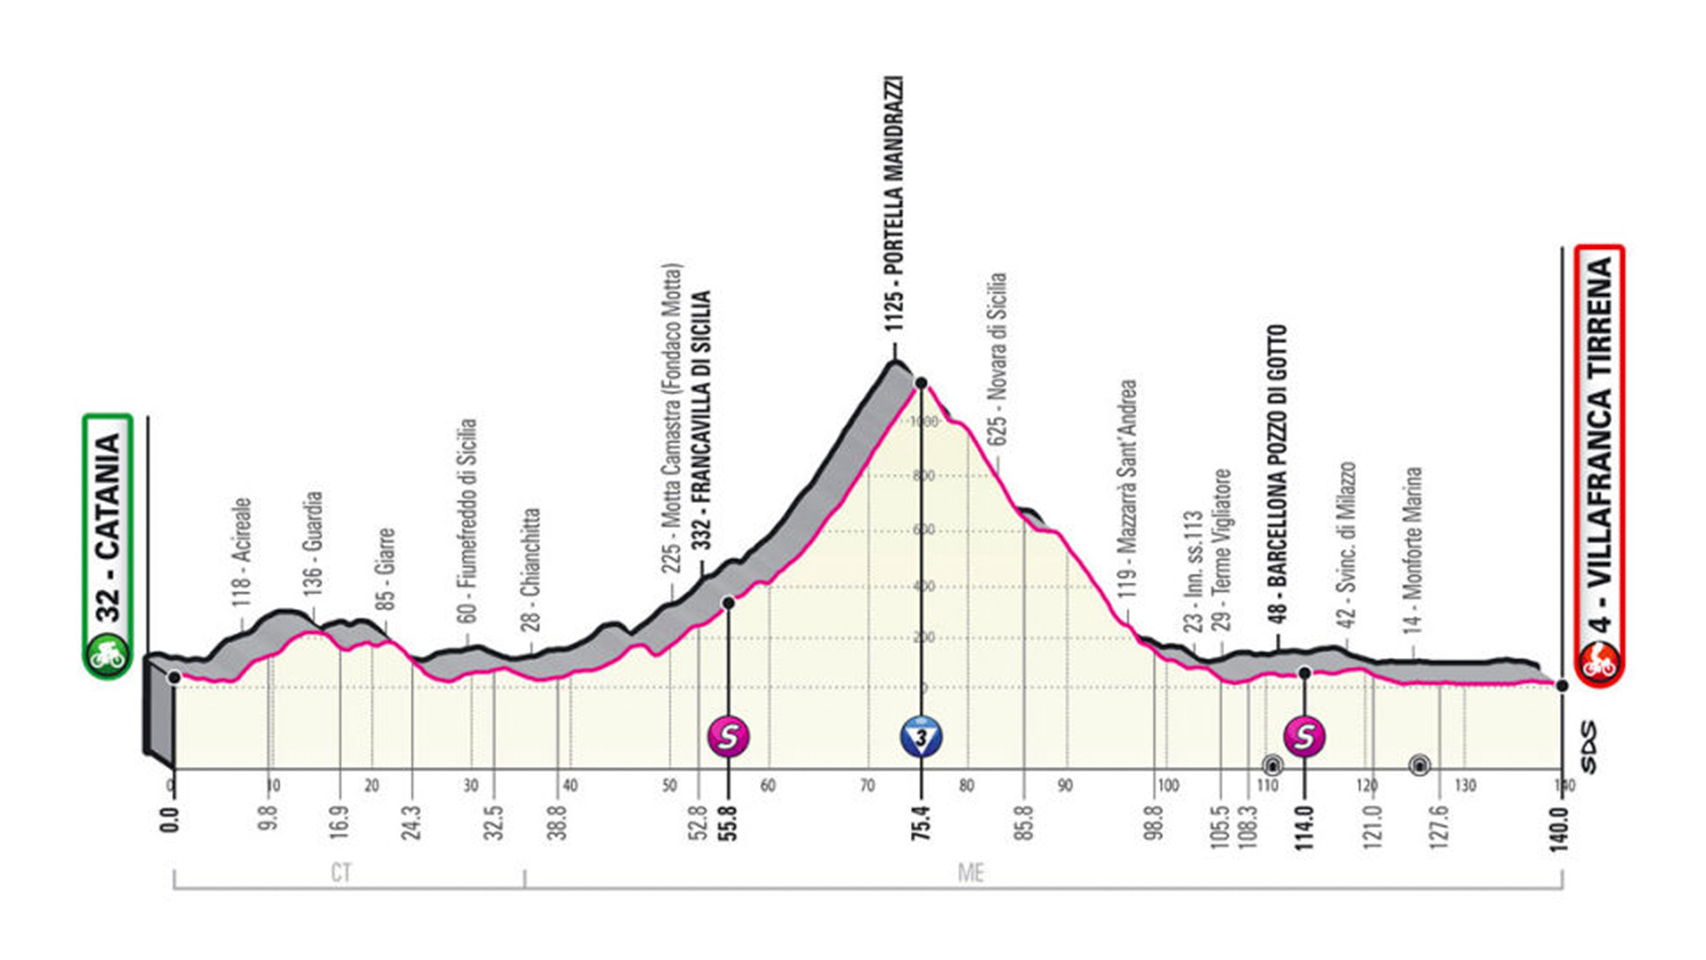 En directo | 4ª etapa del Giro de Italia 2020 entre Catania y Villafranca Tirrena